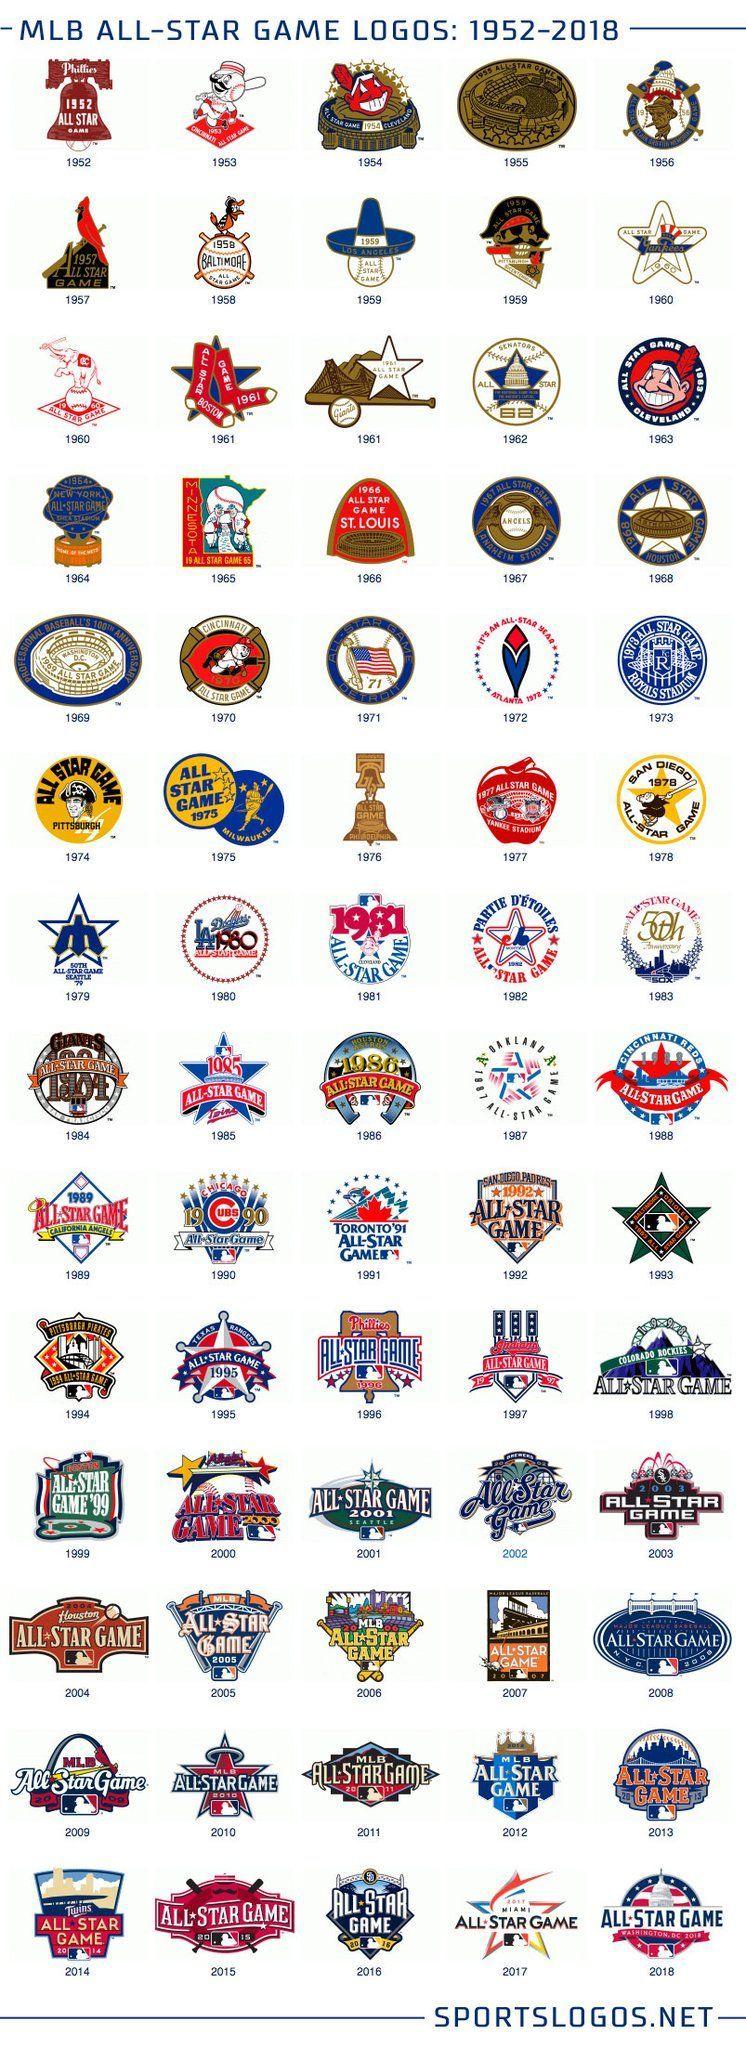 2018 MLB Logo - MLB All Star Game Logos (1952-2018) | Sports Logos & Trivial ...